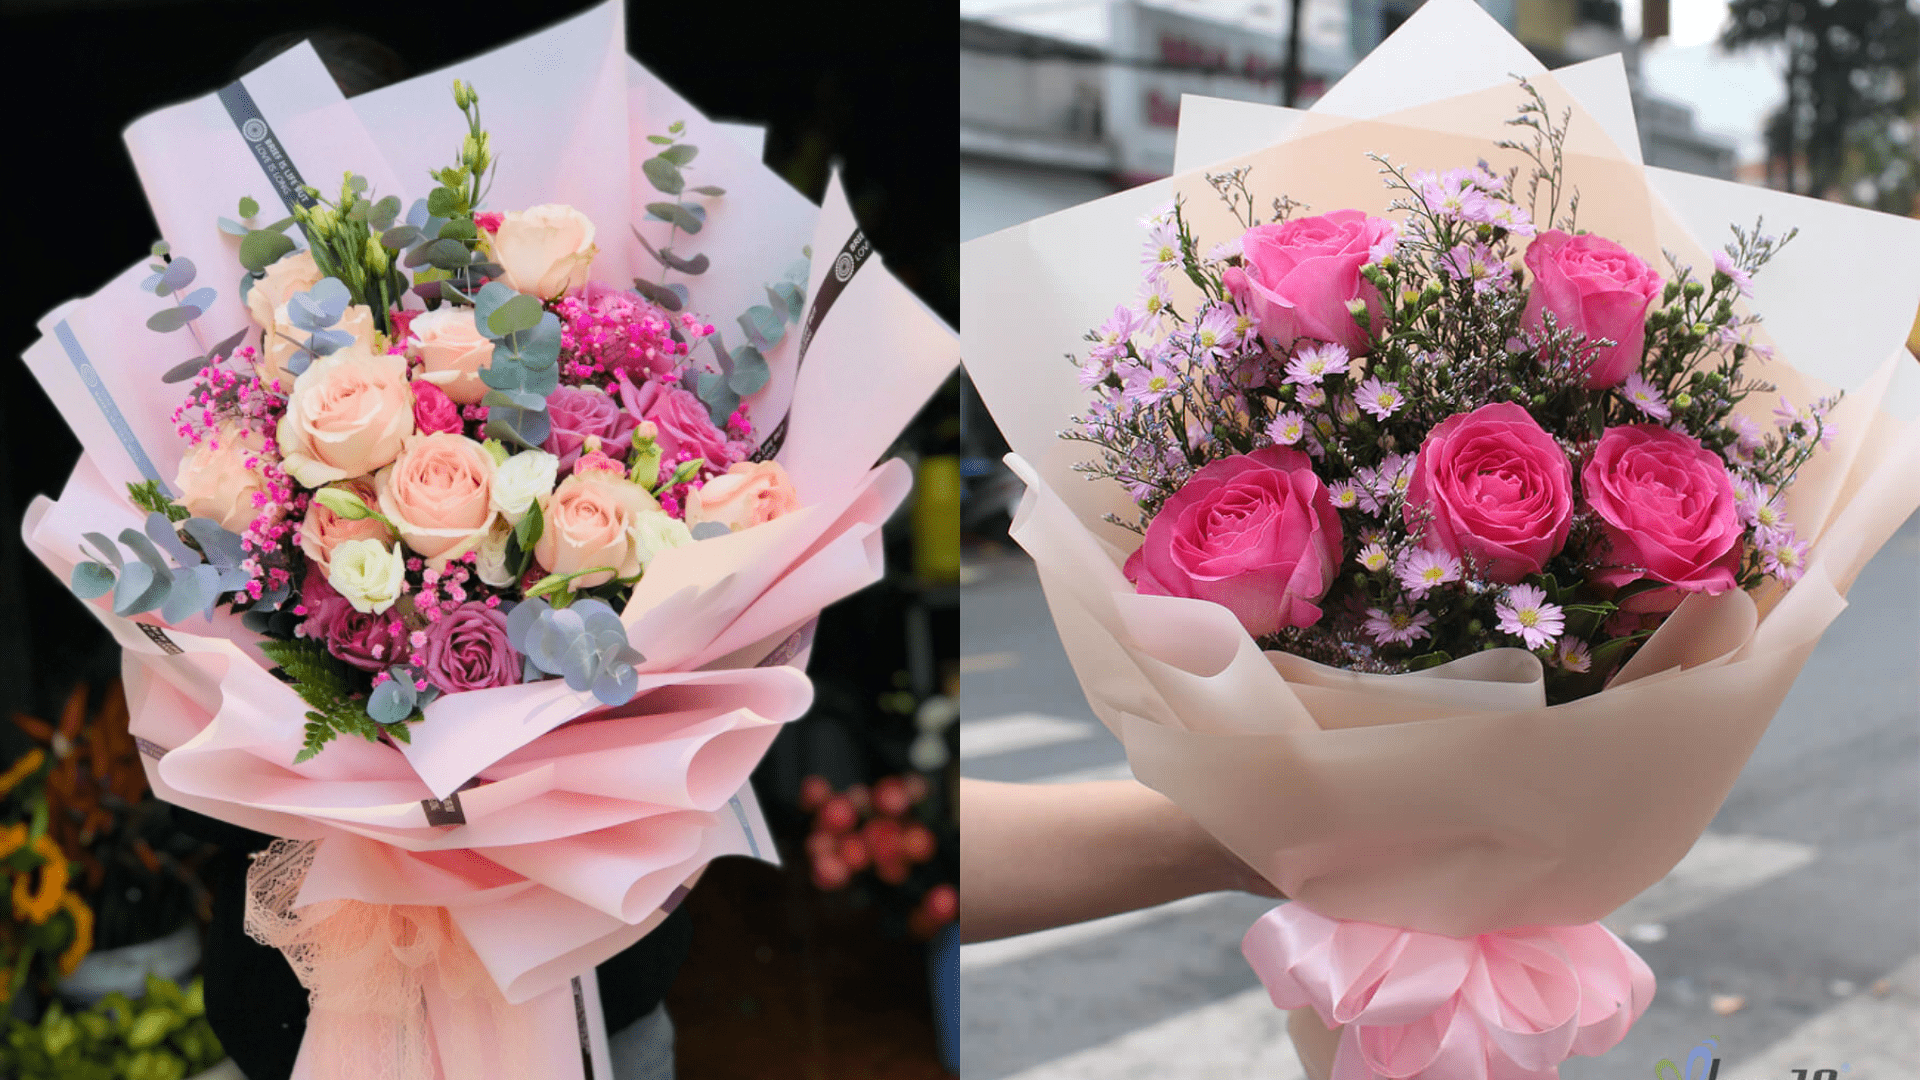 Phomai’s Flower Shop – Shop hoa Đà Nẵng tươi mới, đa dạng